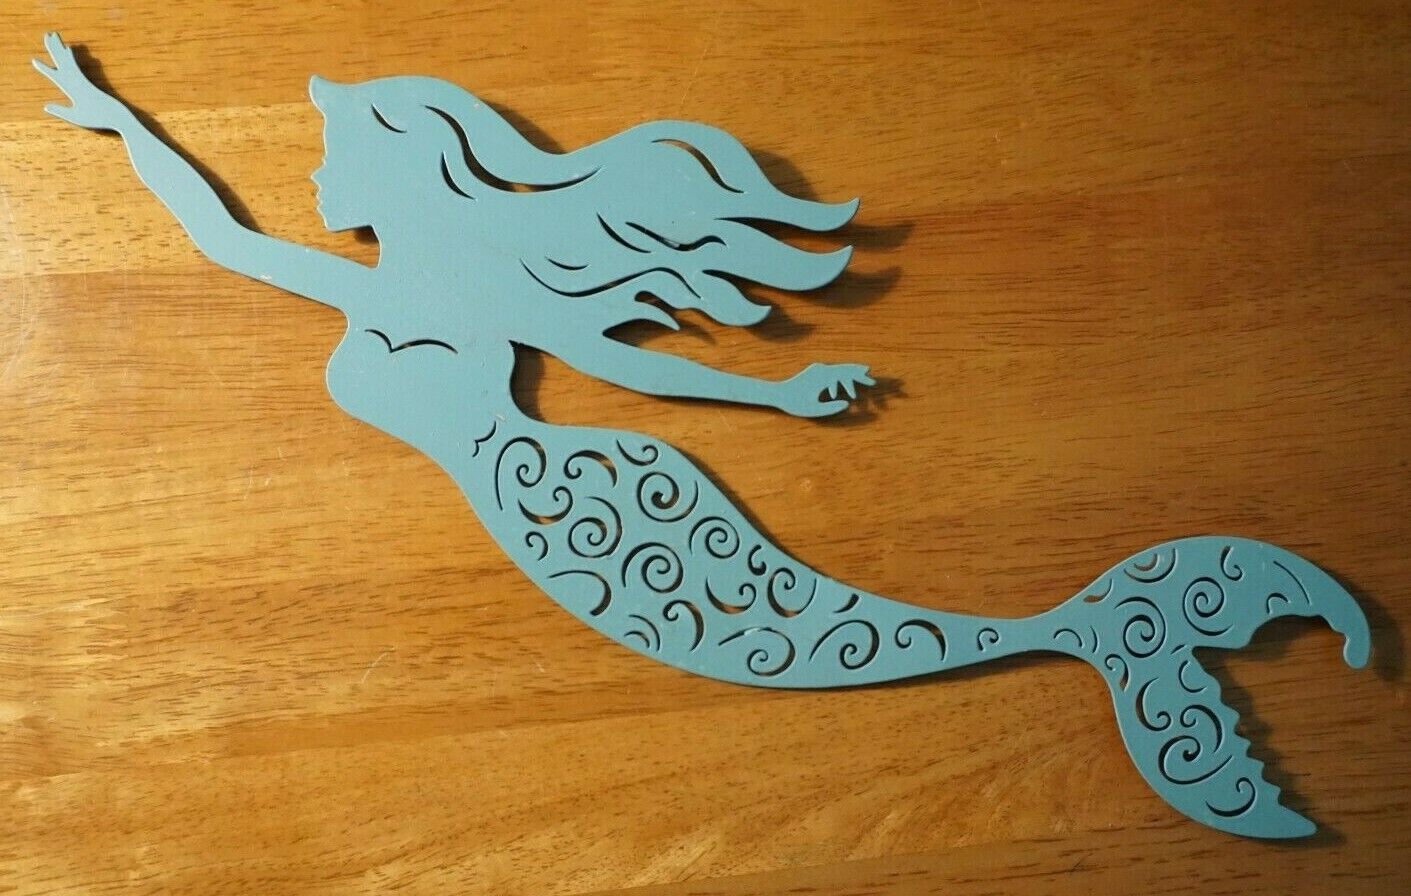 Teal Mermaid Metal Sign Silhouette Sculpture Nautical Coastal Beach Home Decor